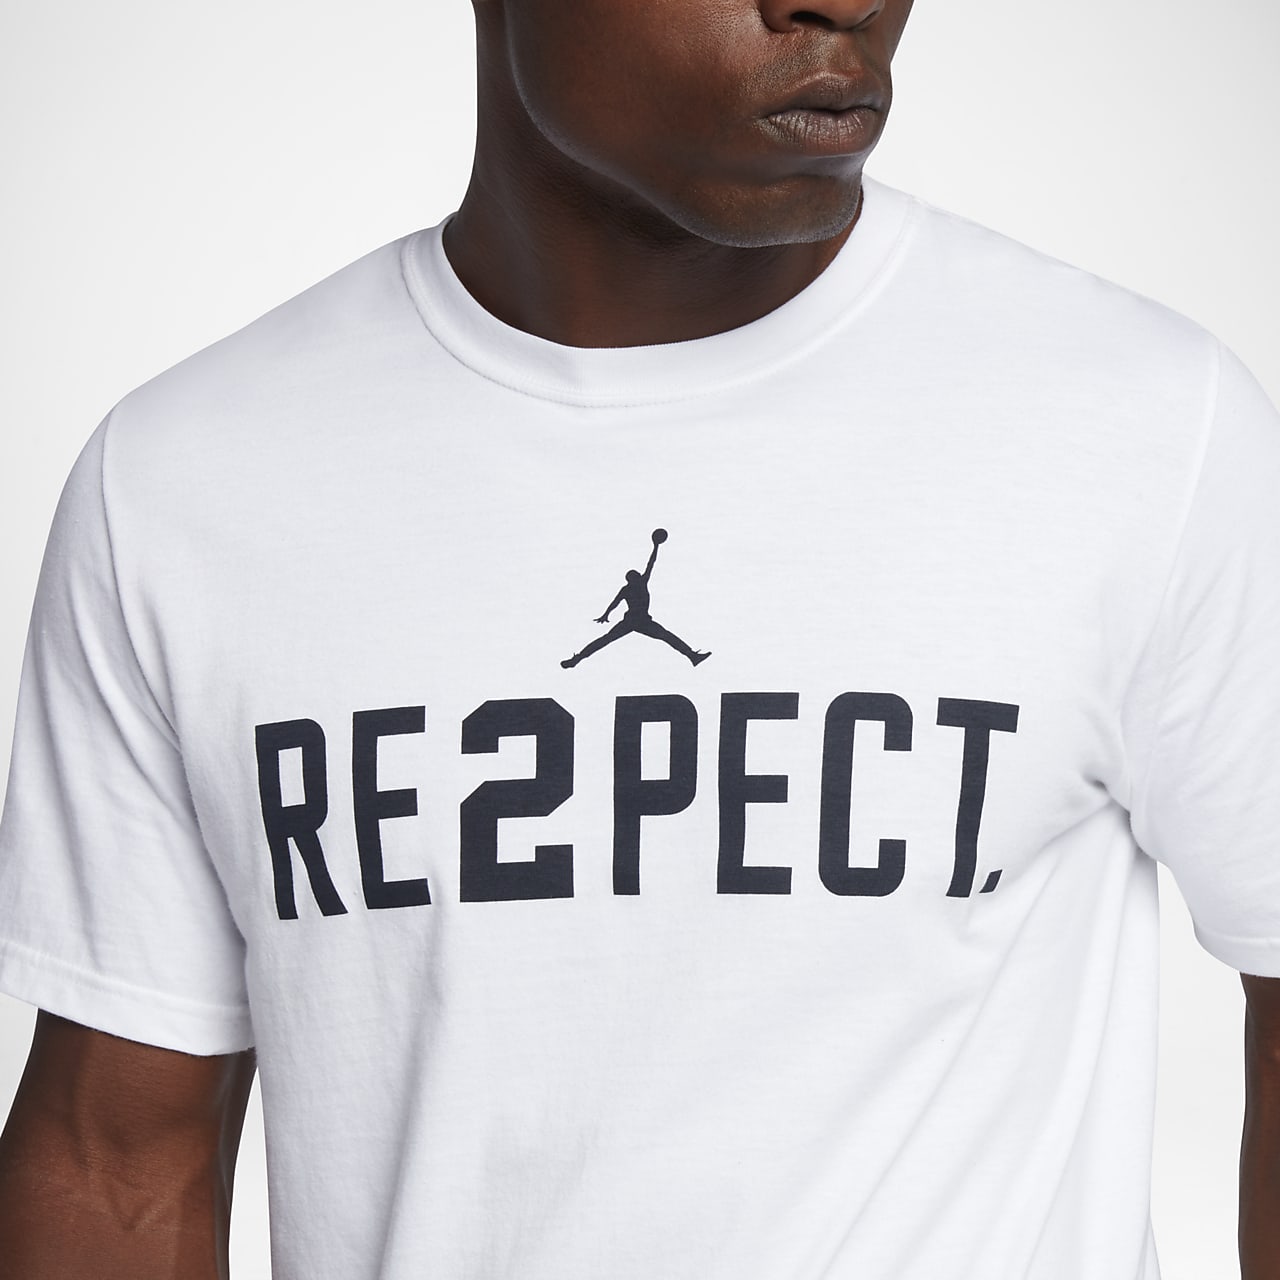 Hecho un desastre capturar unir Jordan "RE2PECT" Men's T-Shirt. Nike.com